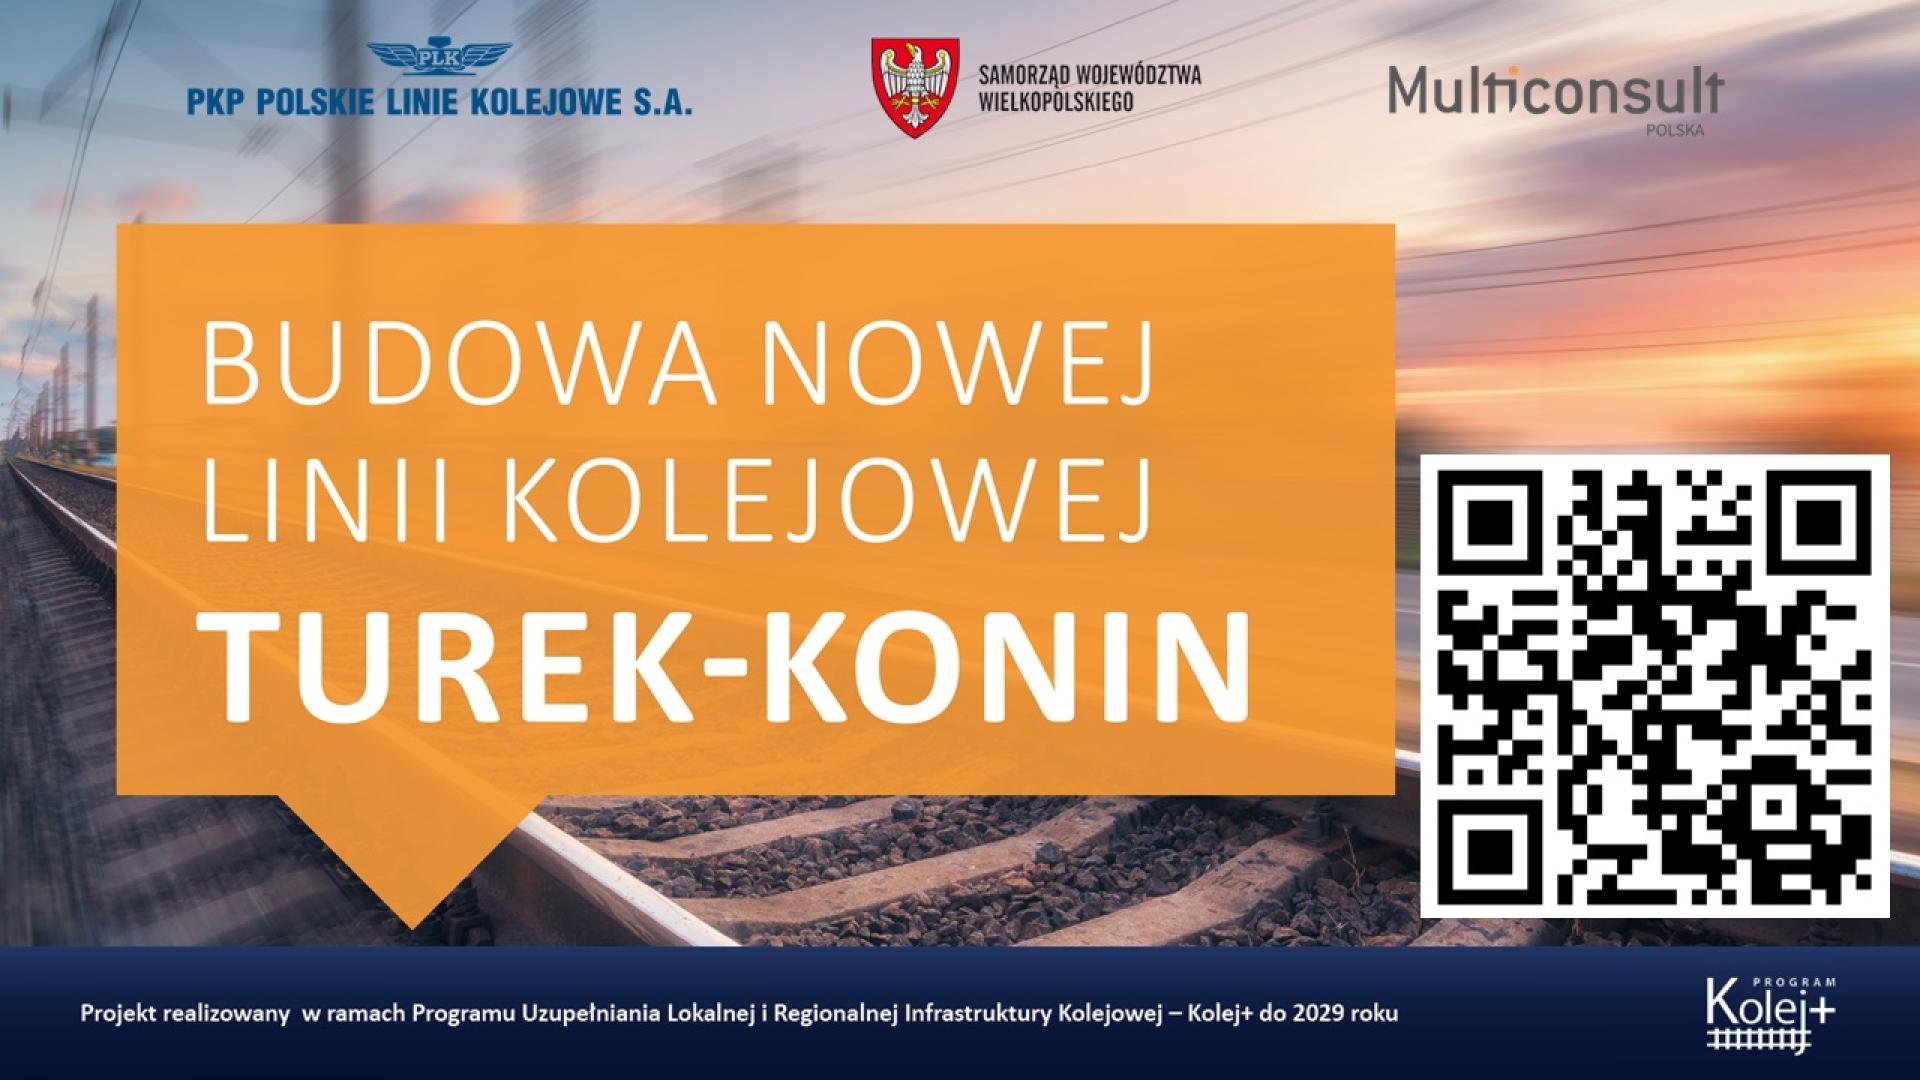 Porozmawiajmy o projekcie nowej linii kolejowej Turek-Konin - zobacz więcej